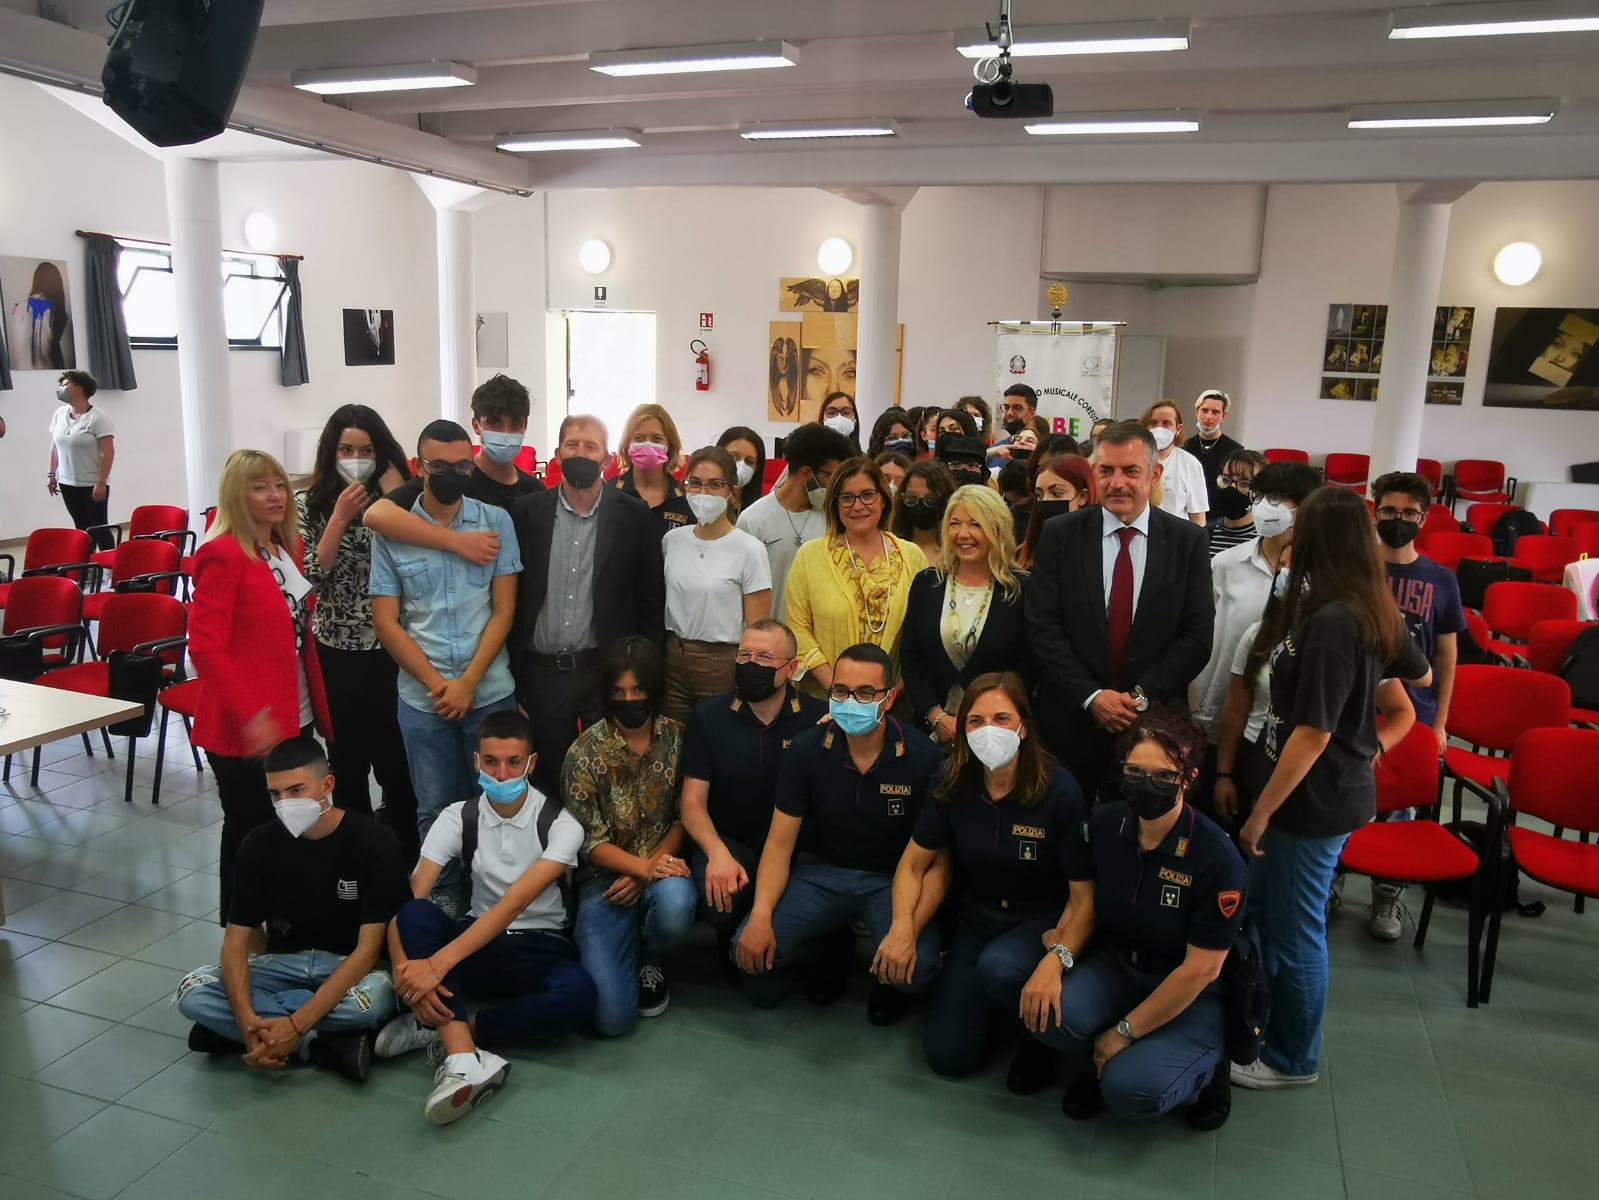 Il Liceo Artistico di Pescara vince il concorso ‘PretenDiamo Legalità’ con il video ‘Diamo voce ai crimini silenziosi’